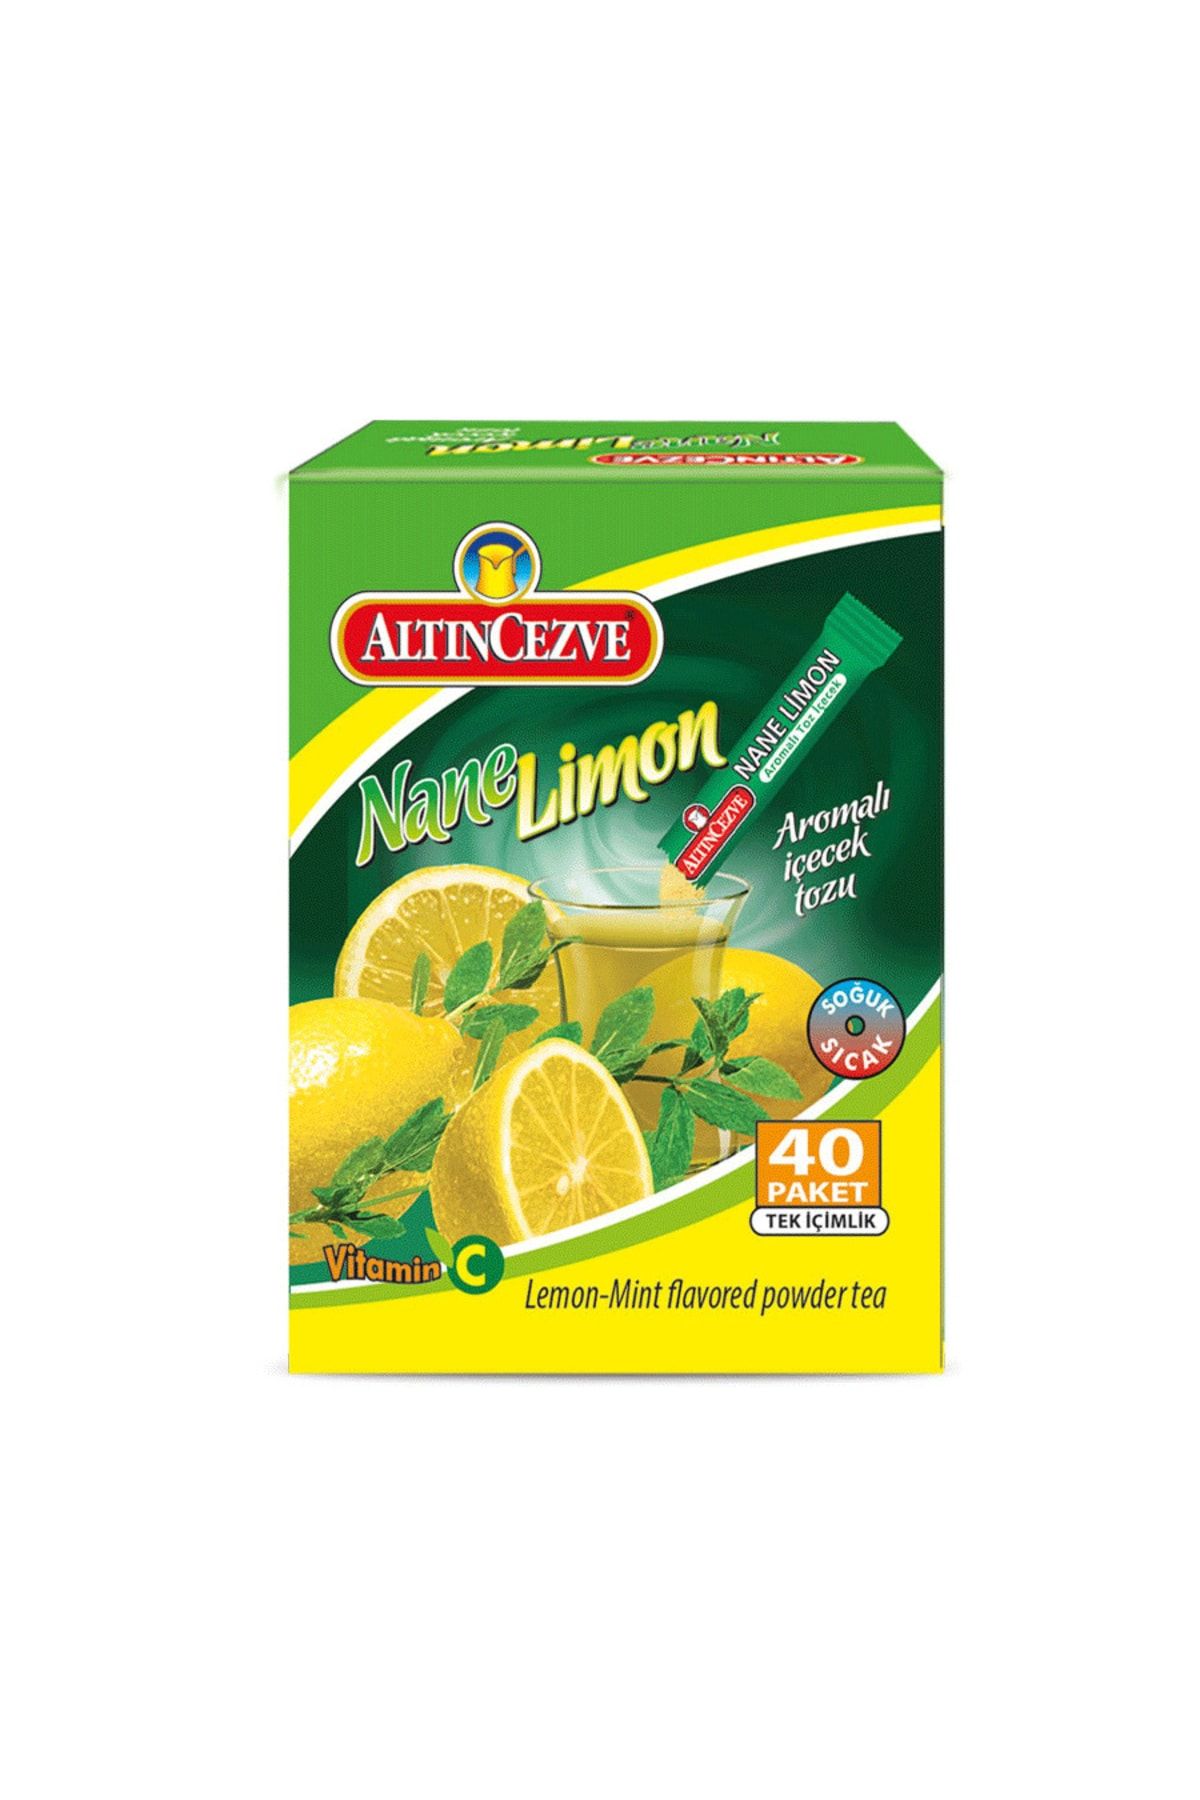 Altıncezve Nane Limon Tek Içimlik Içecek Tozu 40 X 1.5 gr